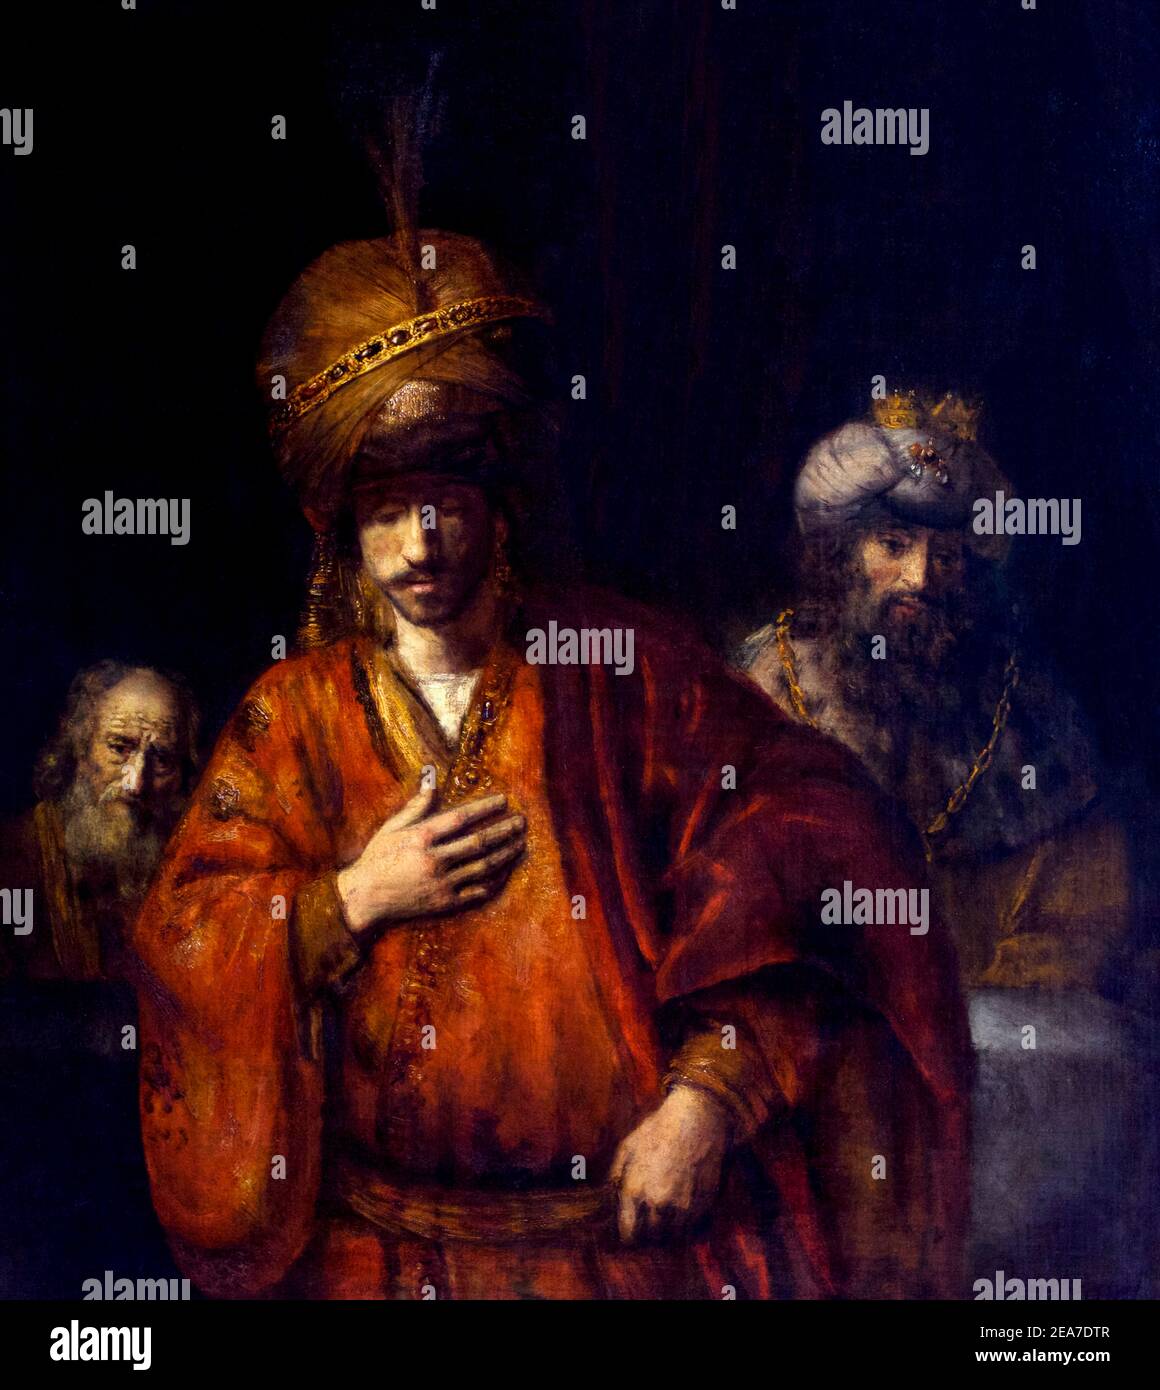 Haman erkennt sein Schicksal, Rembrandt, 1663, State Hermitage Museum, Sankt Petersburg, Russland Stockfoto